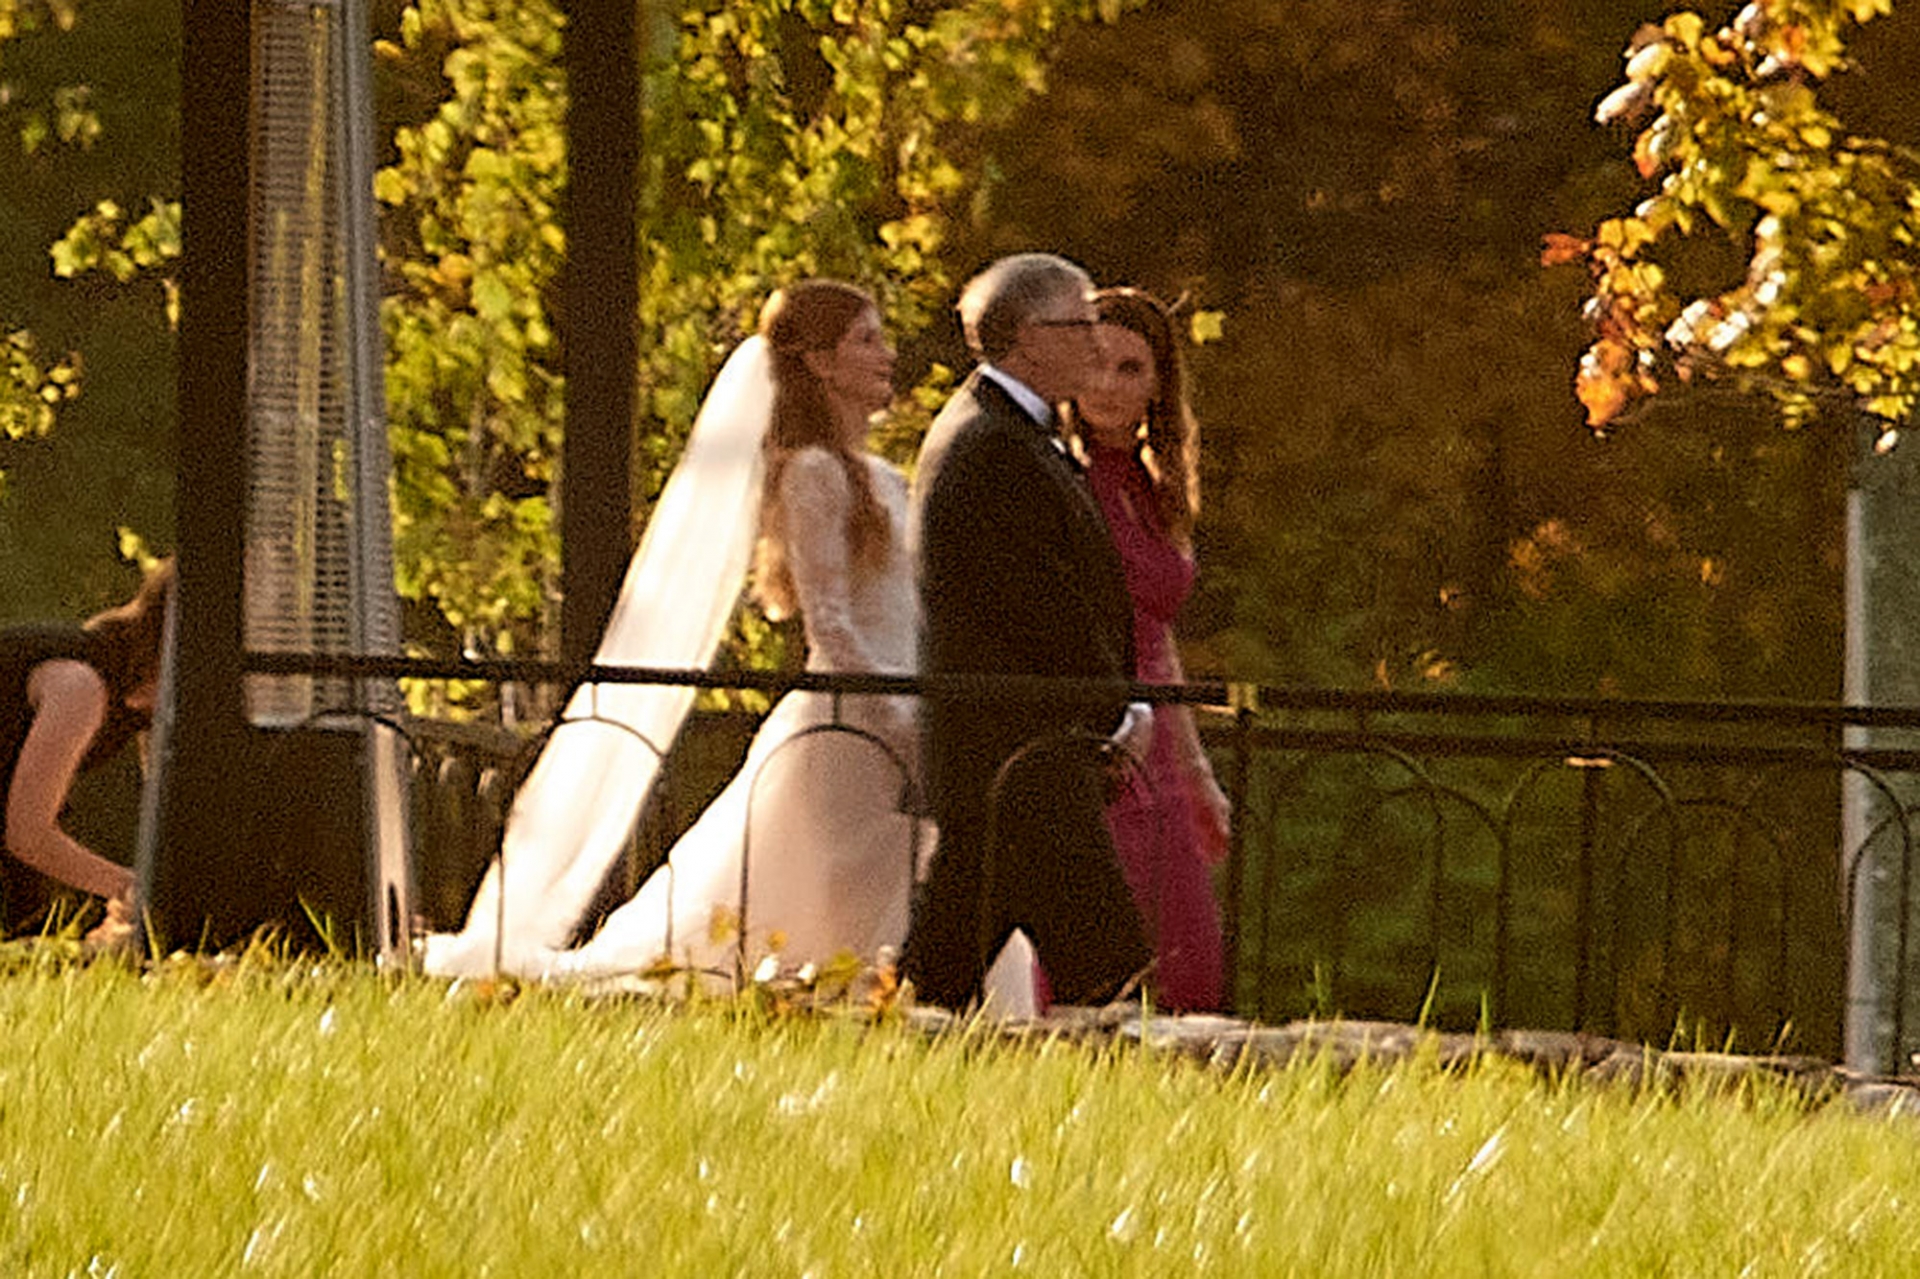 Tỷ phú Bill Gates và vợ cũ đã tạm gác lại chuyện cũ để cùng đưa con vào lễ đường trong ngày trọng đại